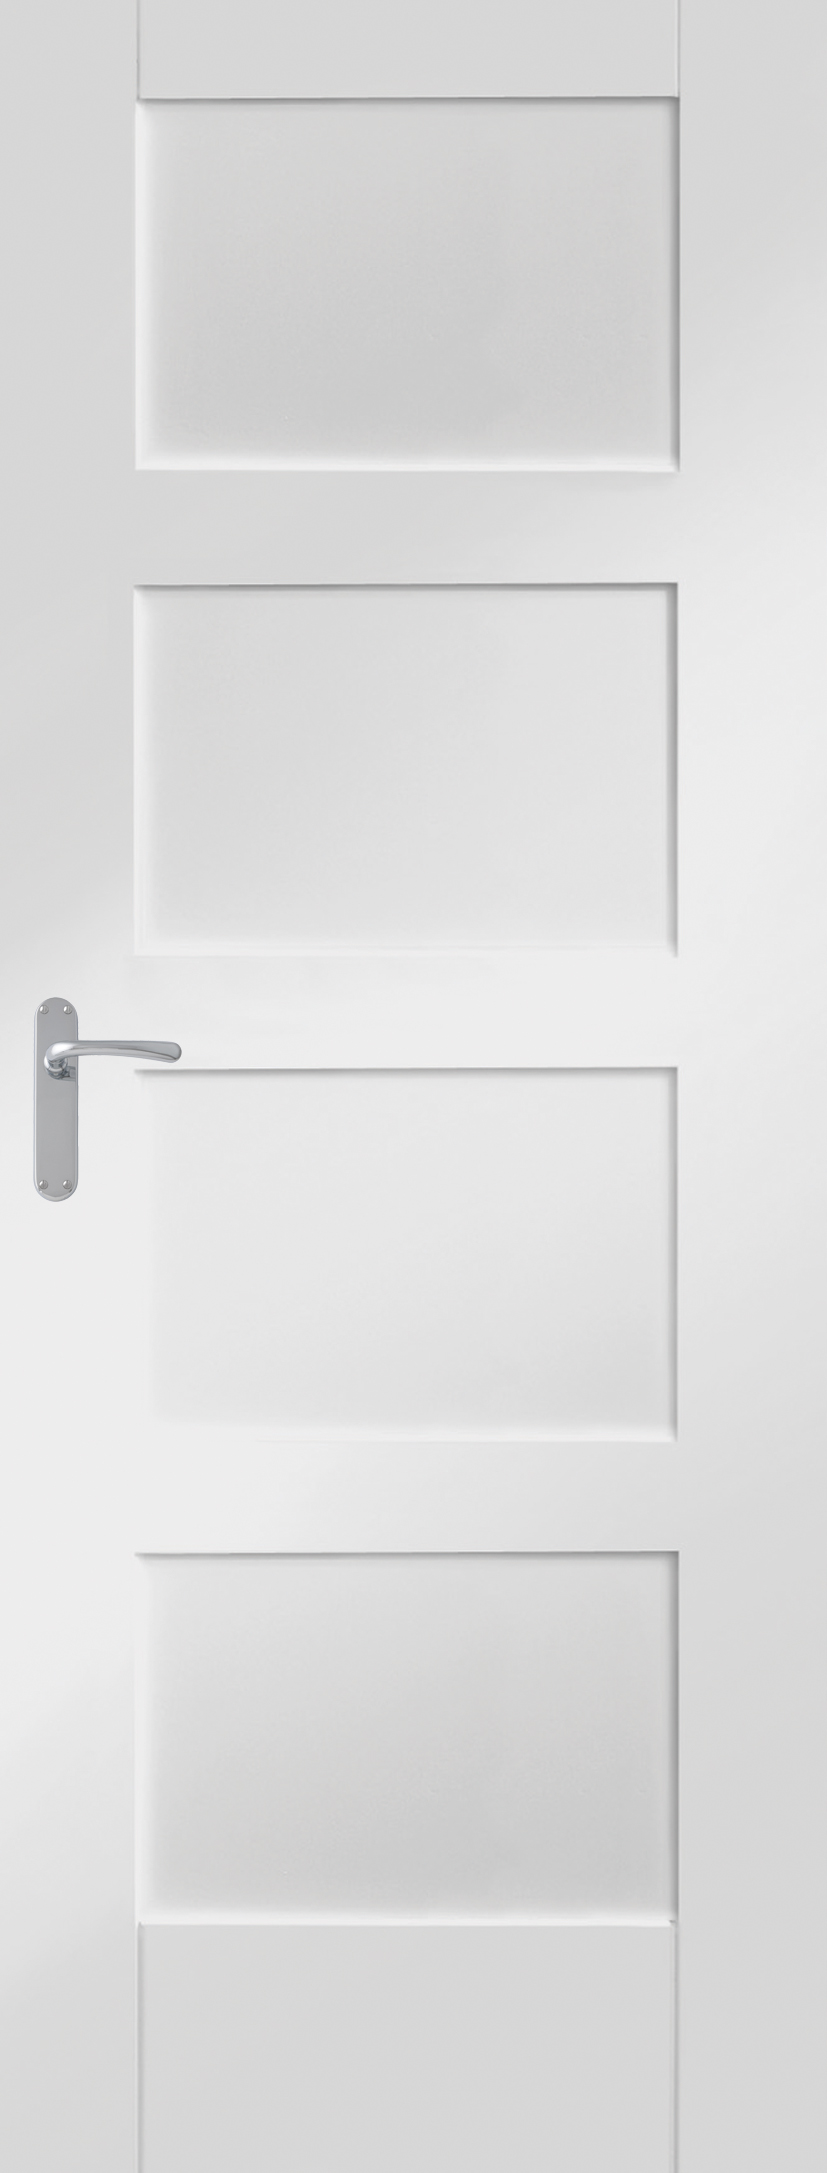 Shaker 4 Panel White Primed Internal Door